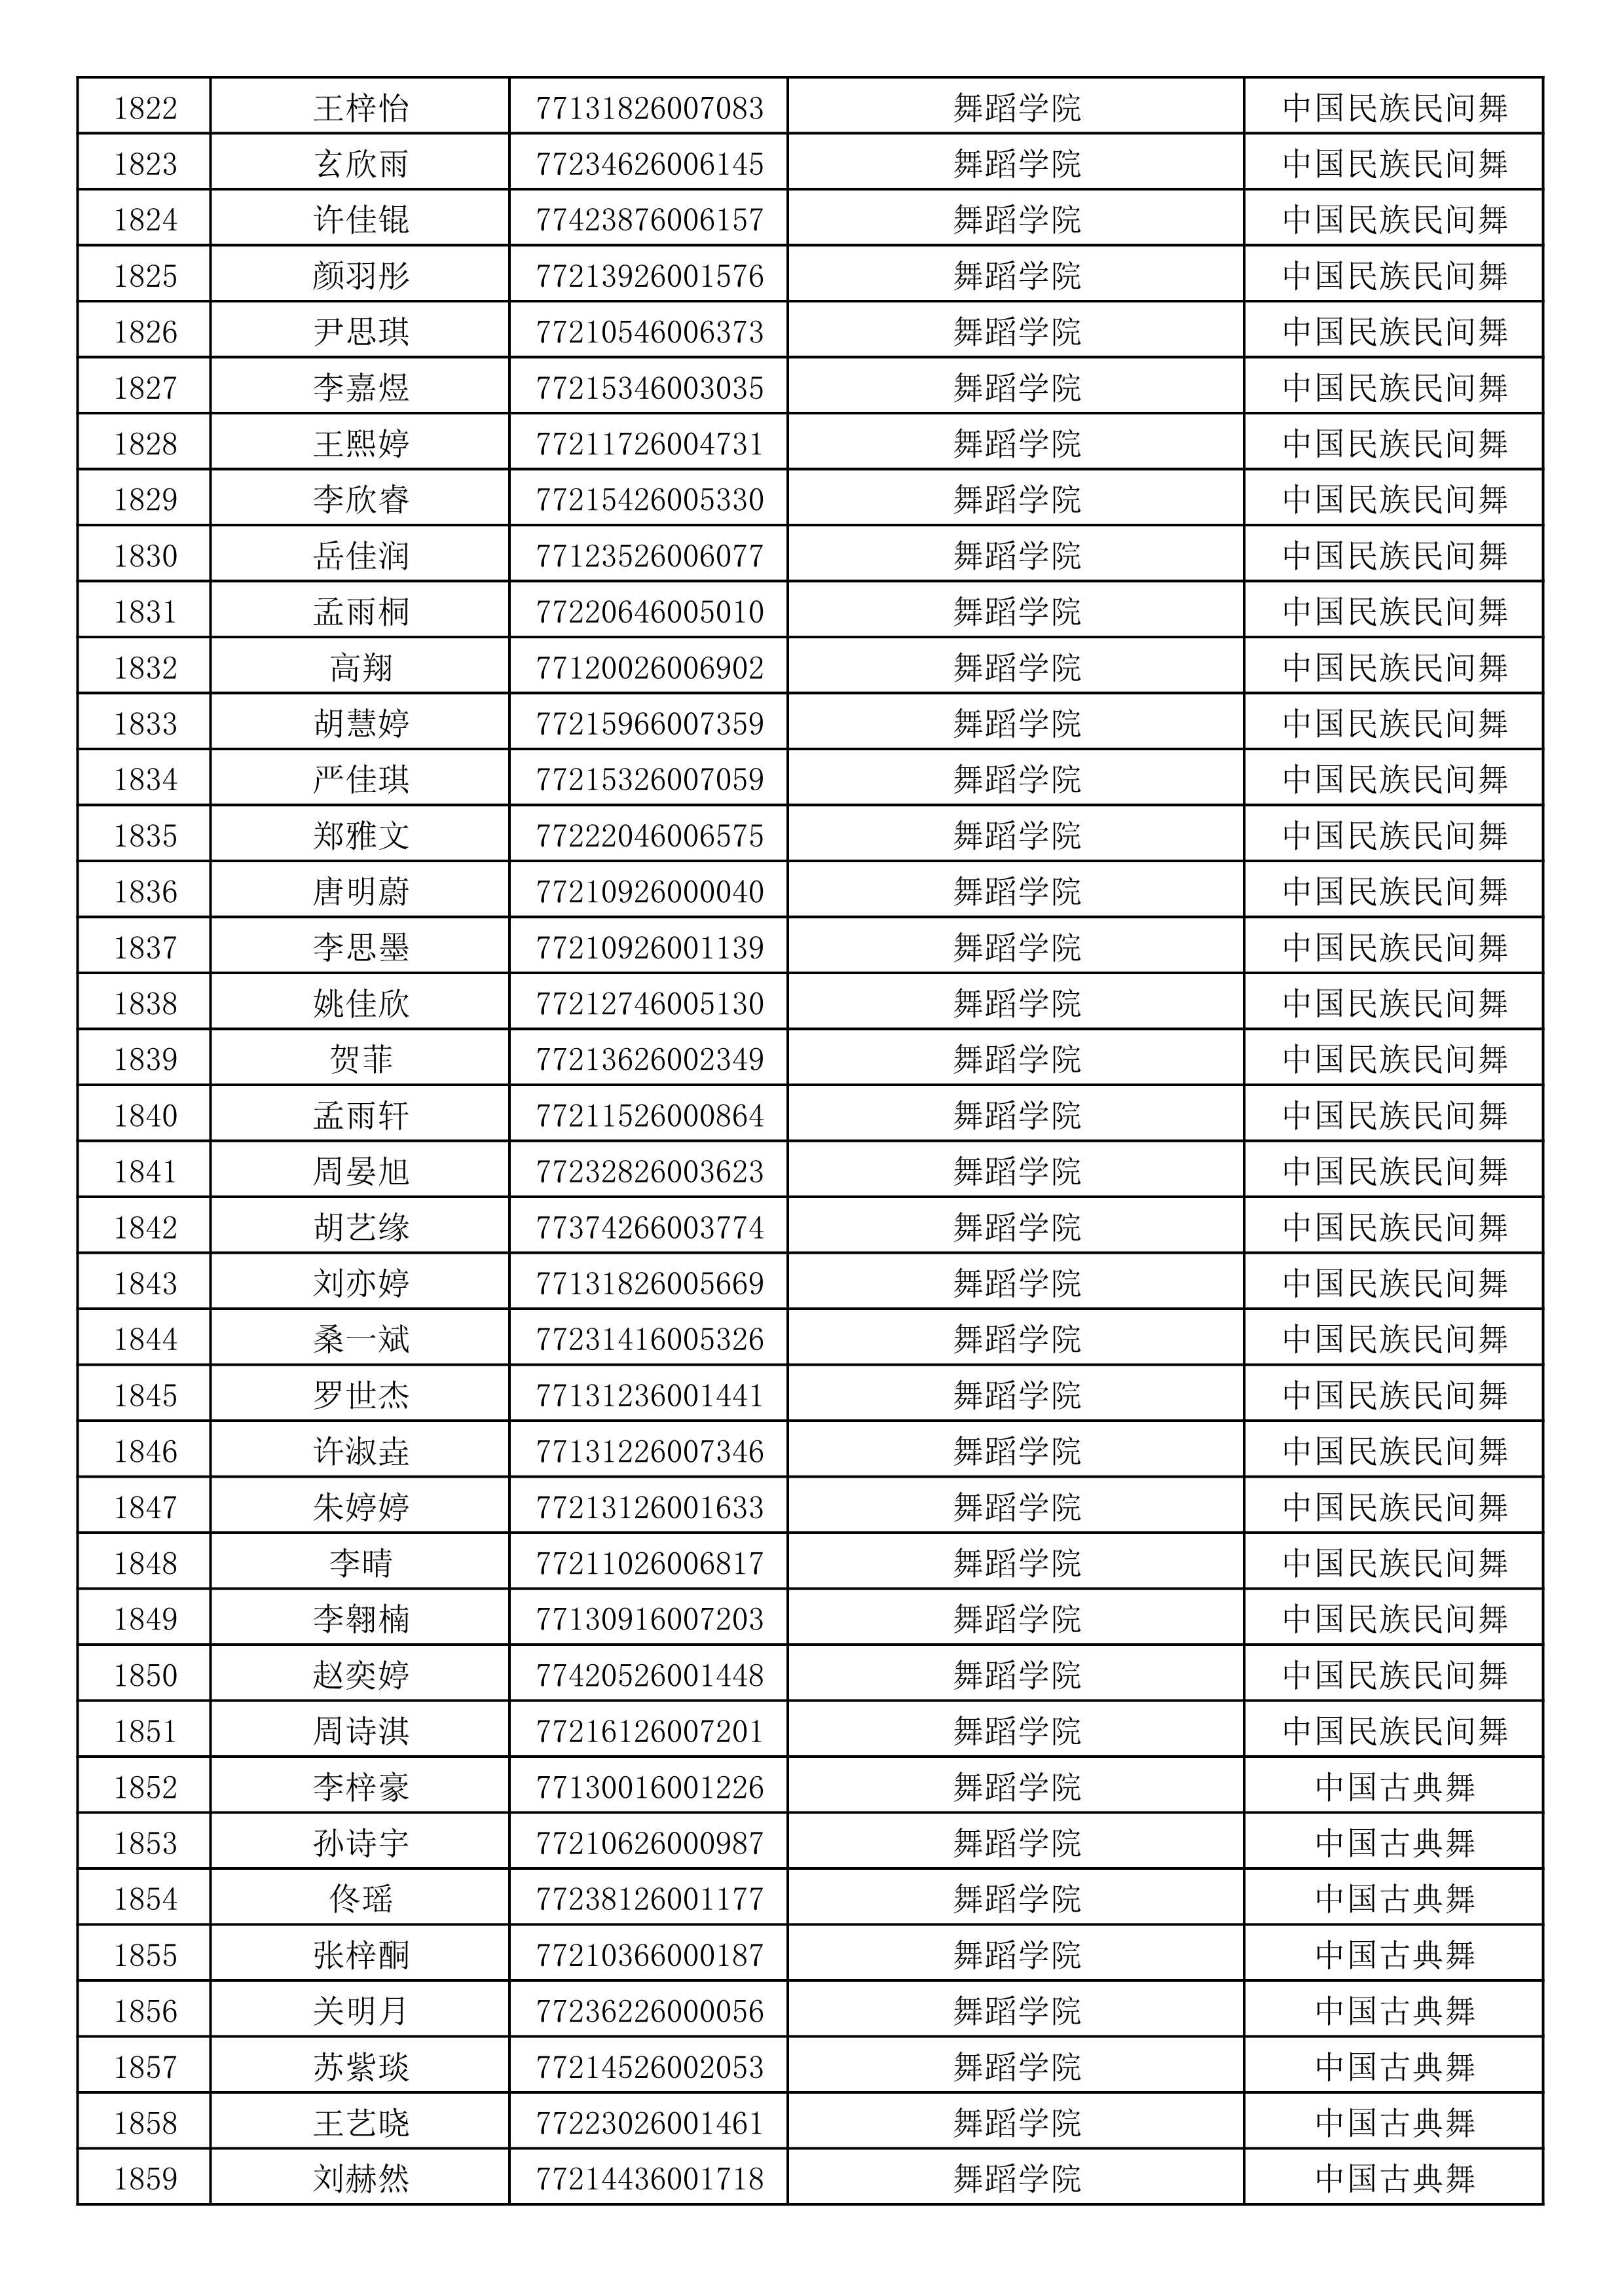 沈阳音乐学院2019年本科招生考试初试合格名单_49.jpg